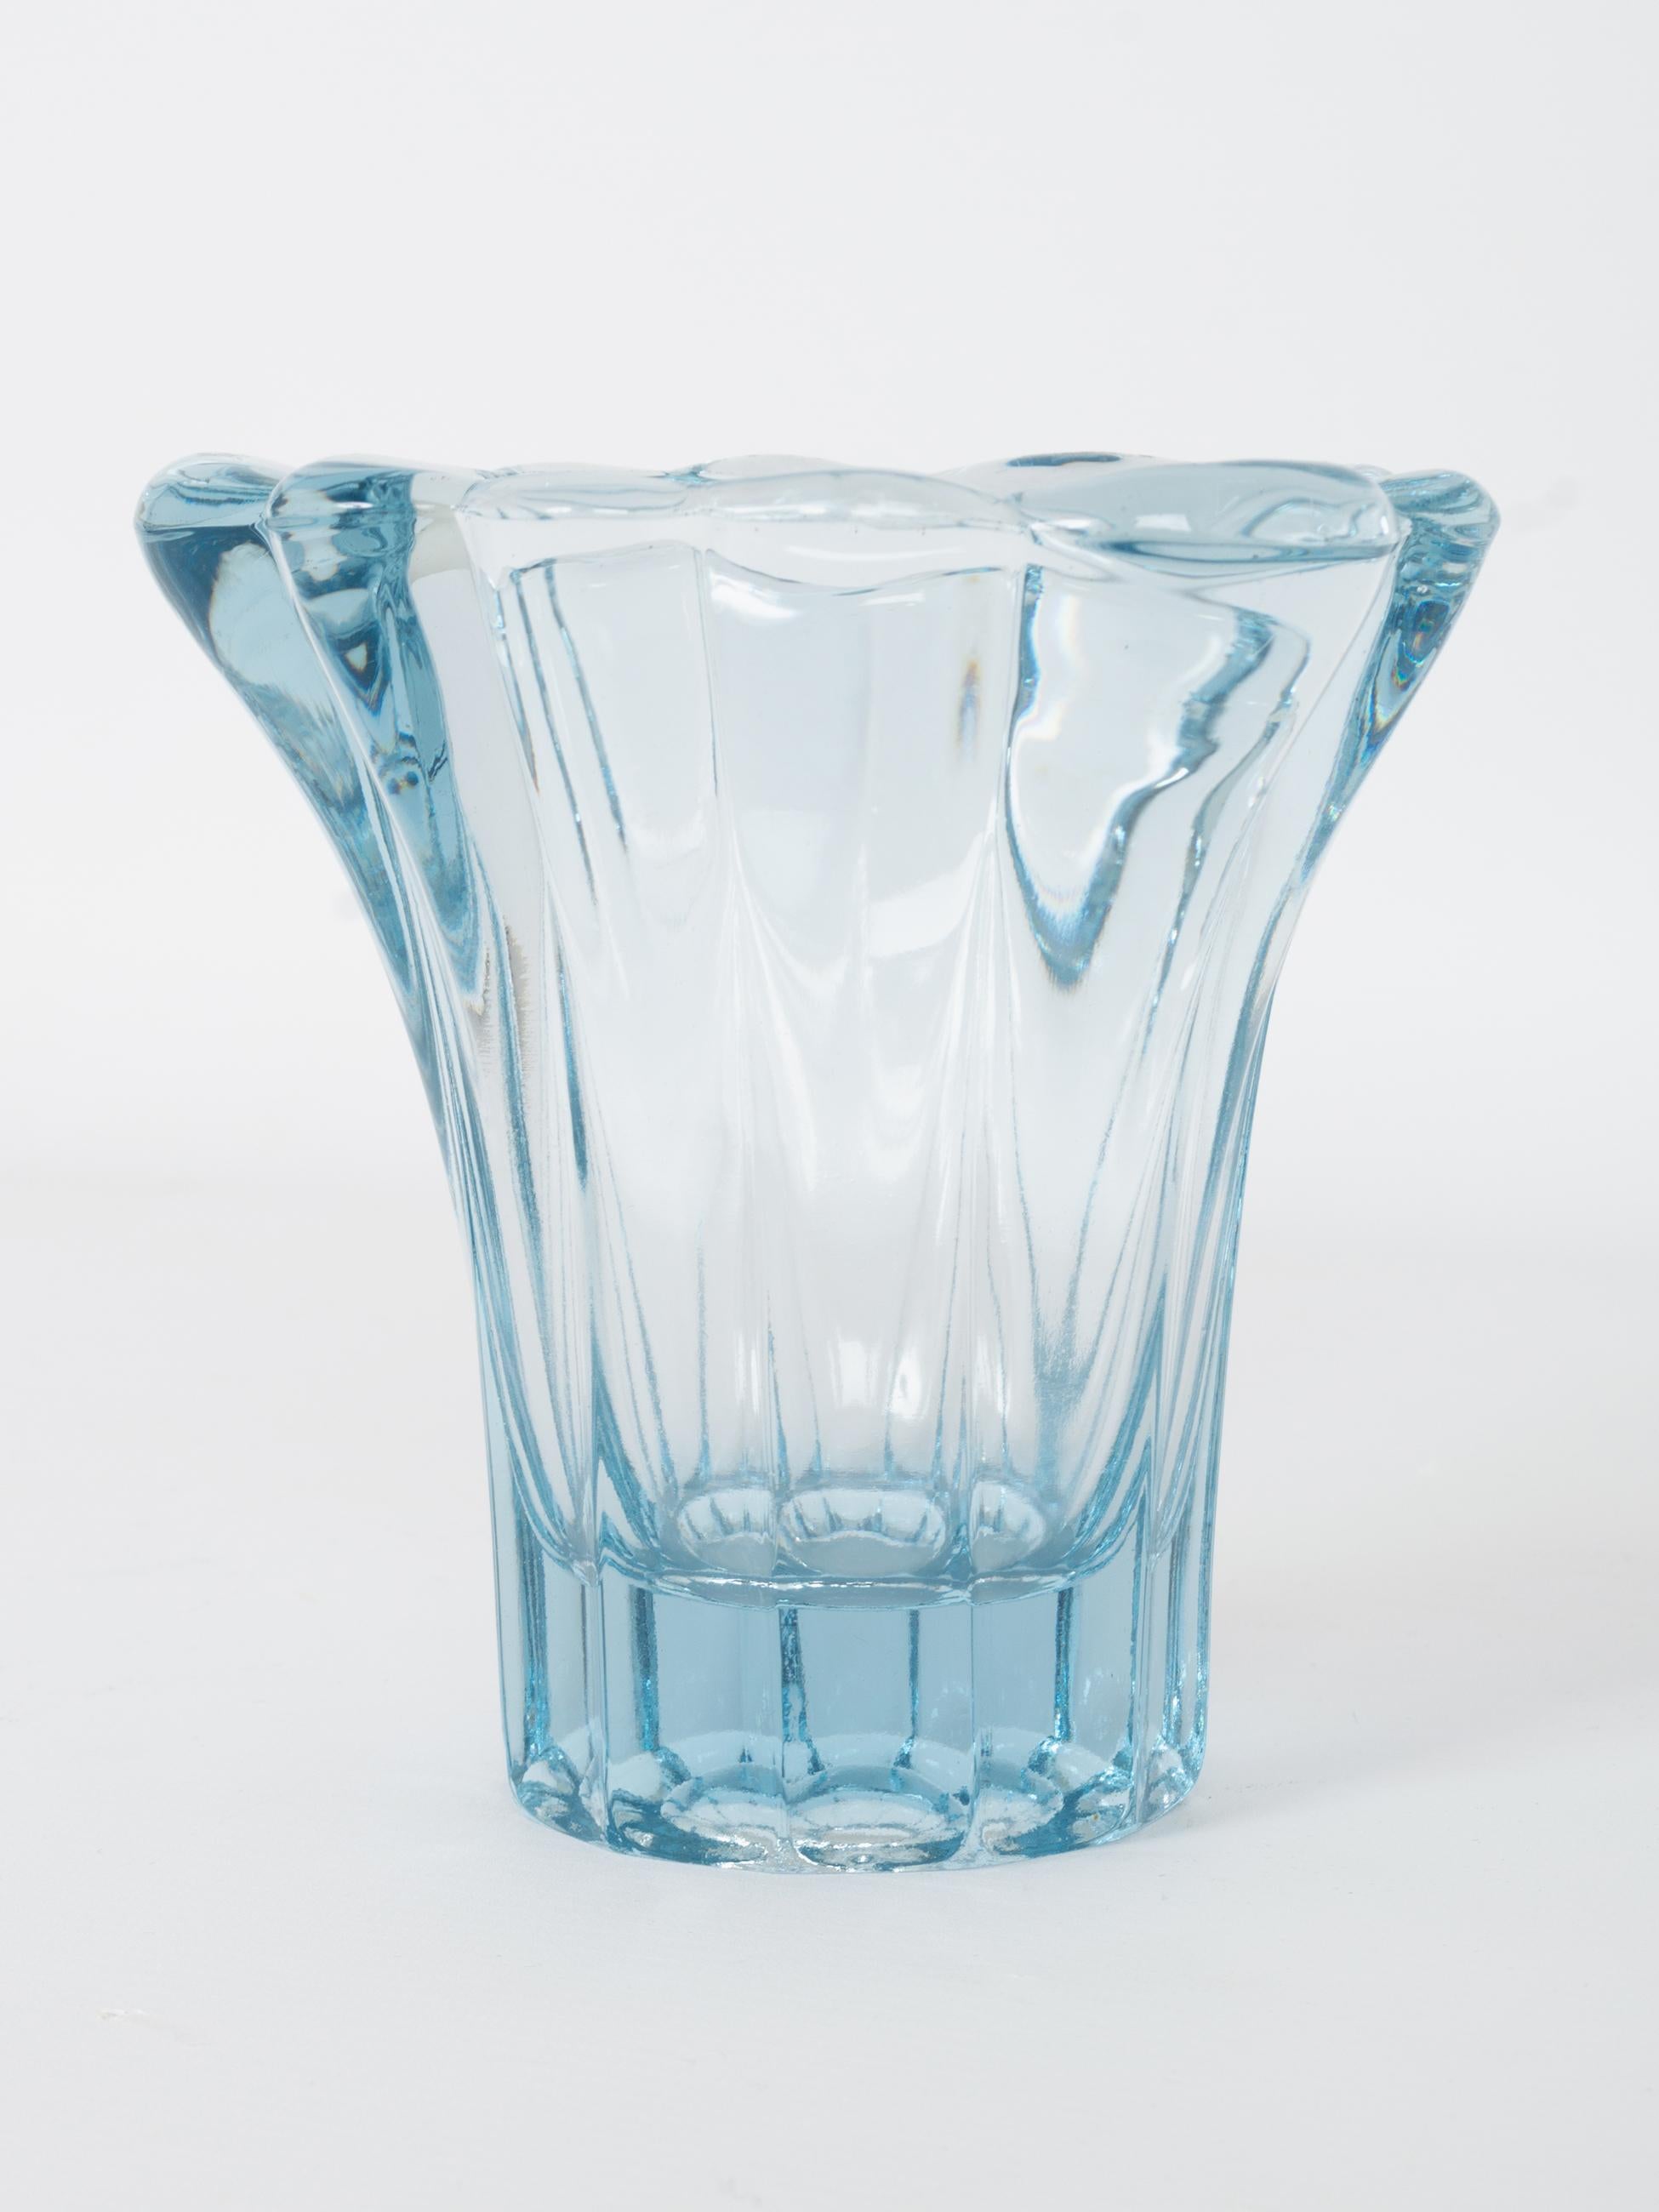 aqua vases for sale